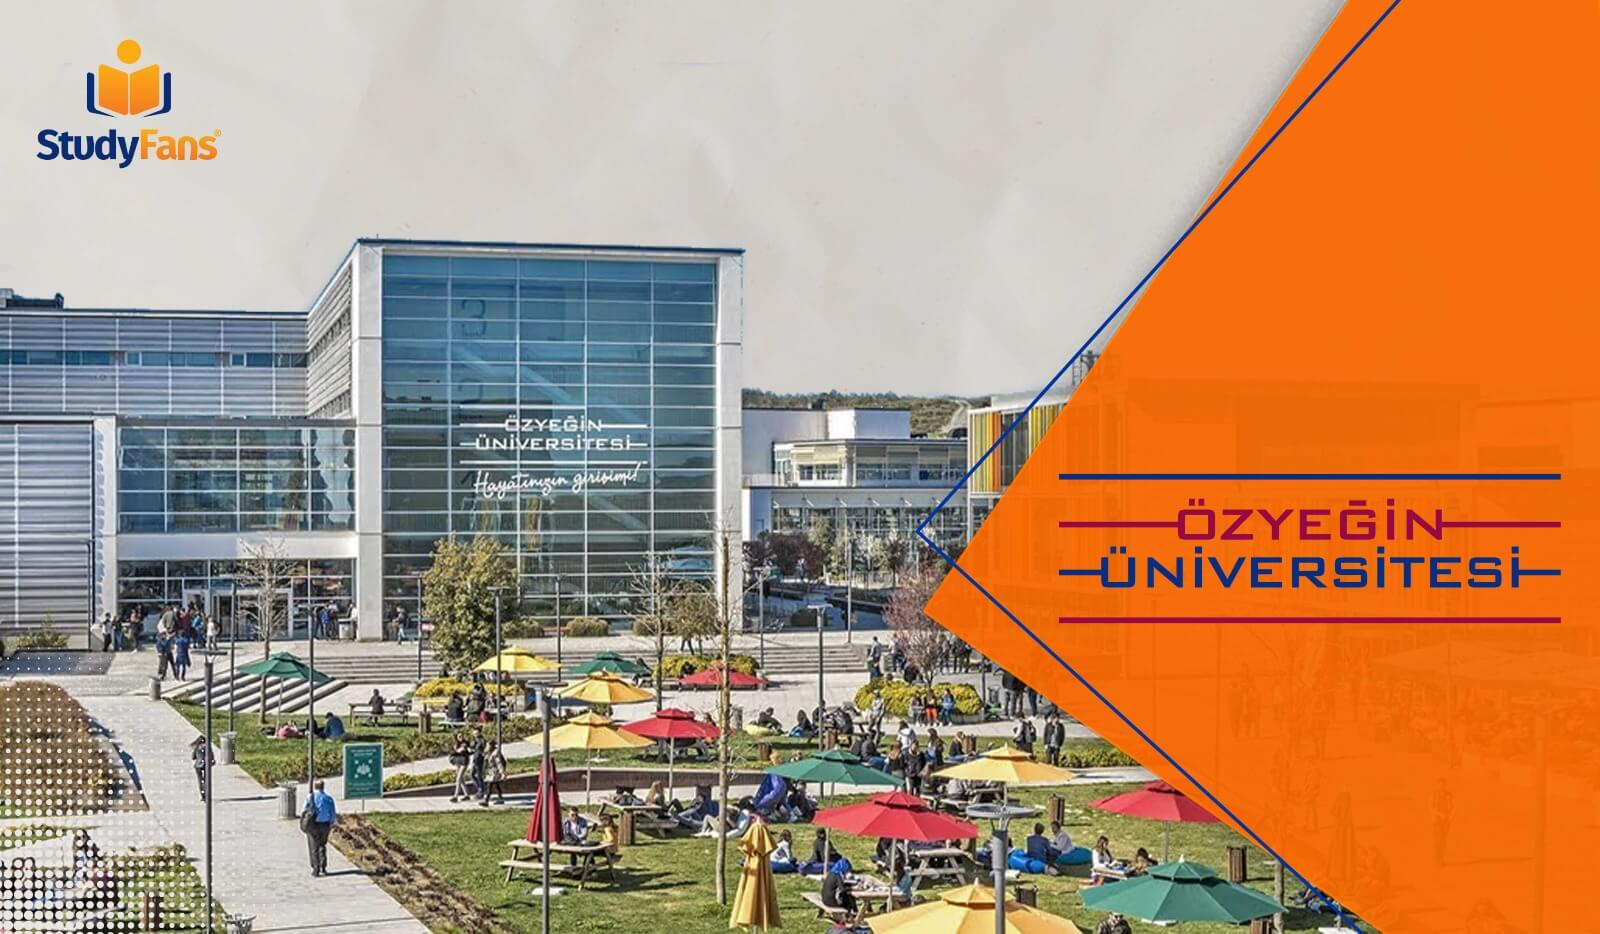 جامعة أوزيجين Özyeğin University | الدراسة في تركيا